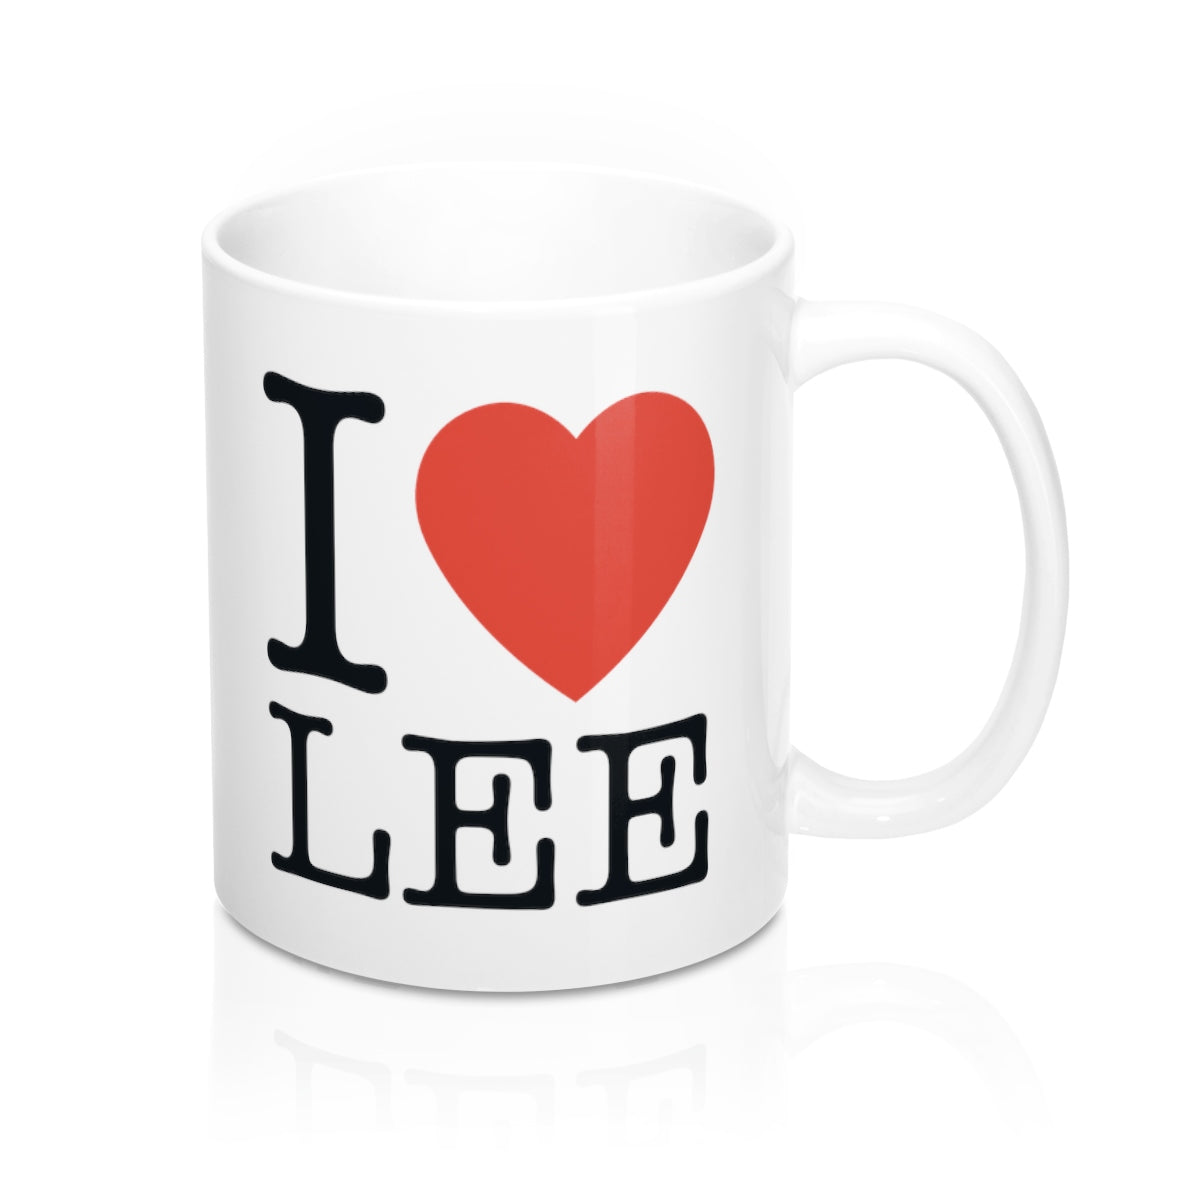 I Heart Lee Mug